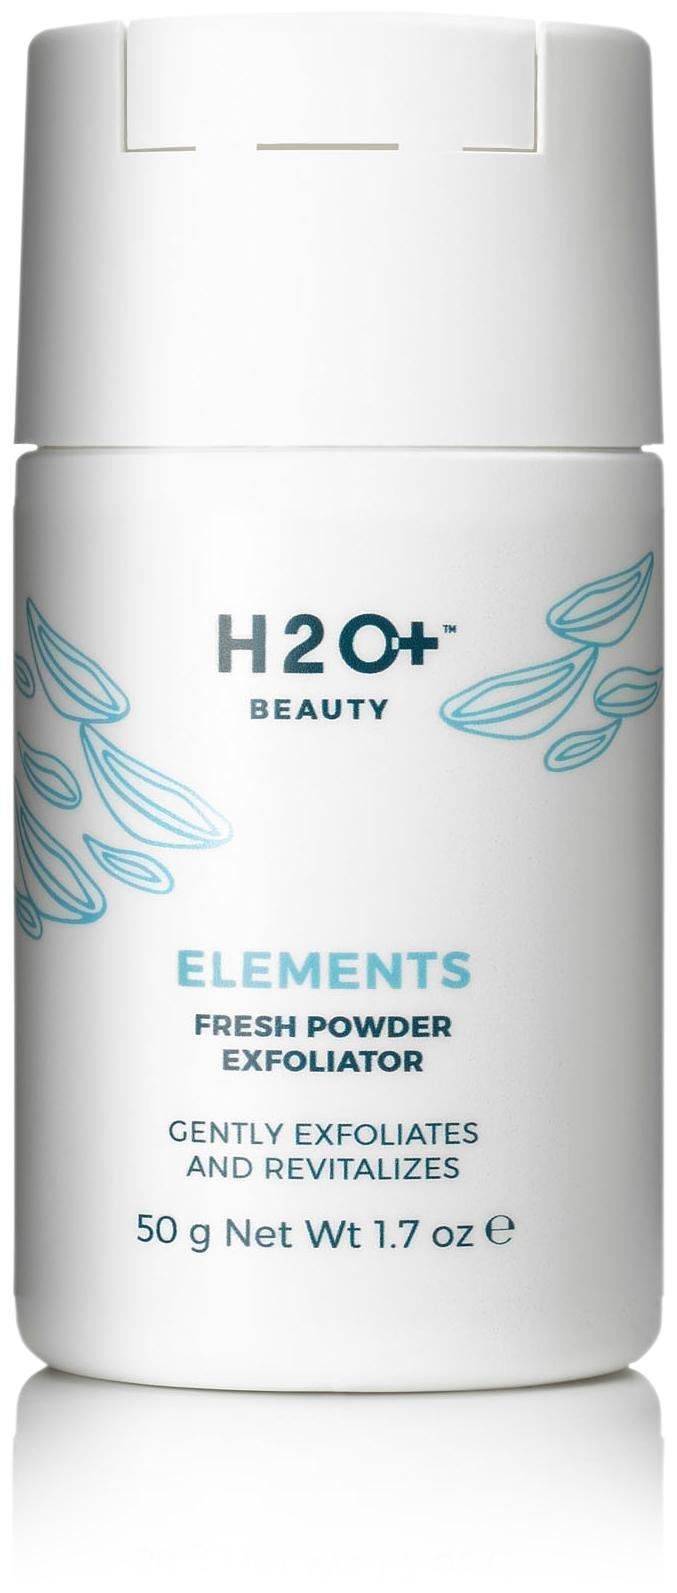 H2o Plus Elements Fresh Powder Exfoliator